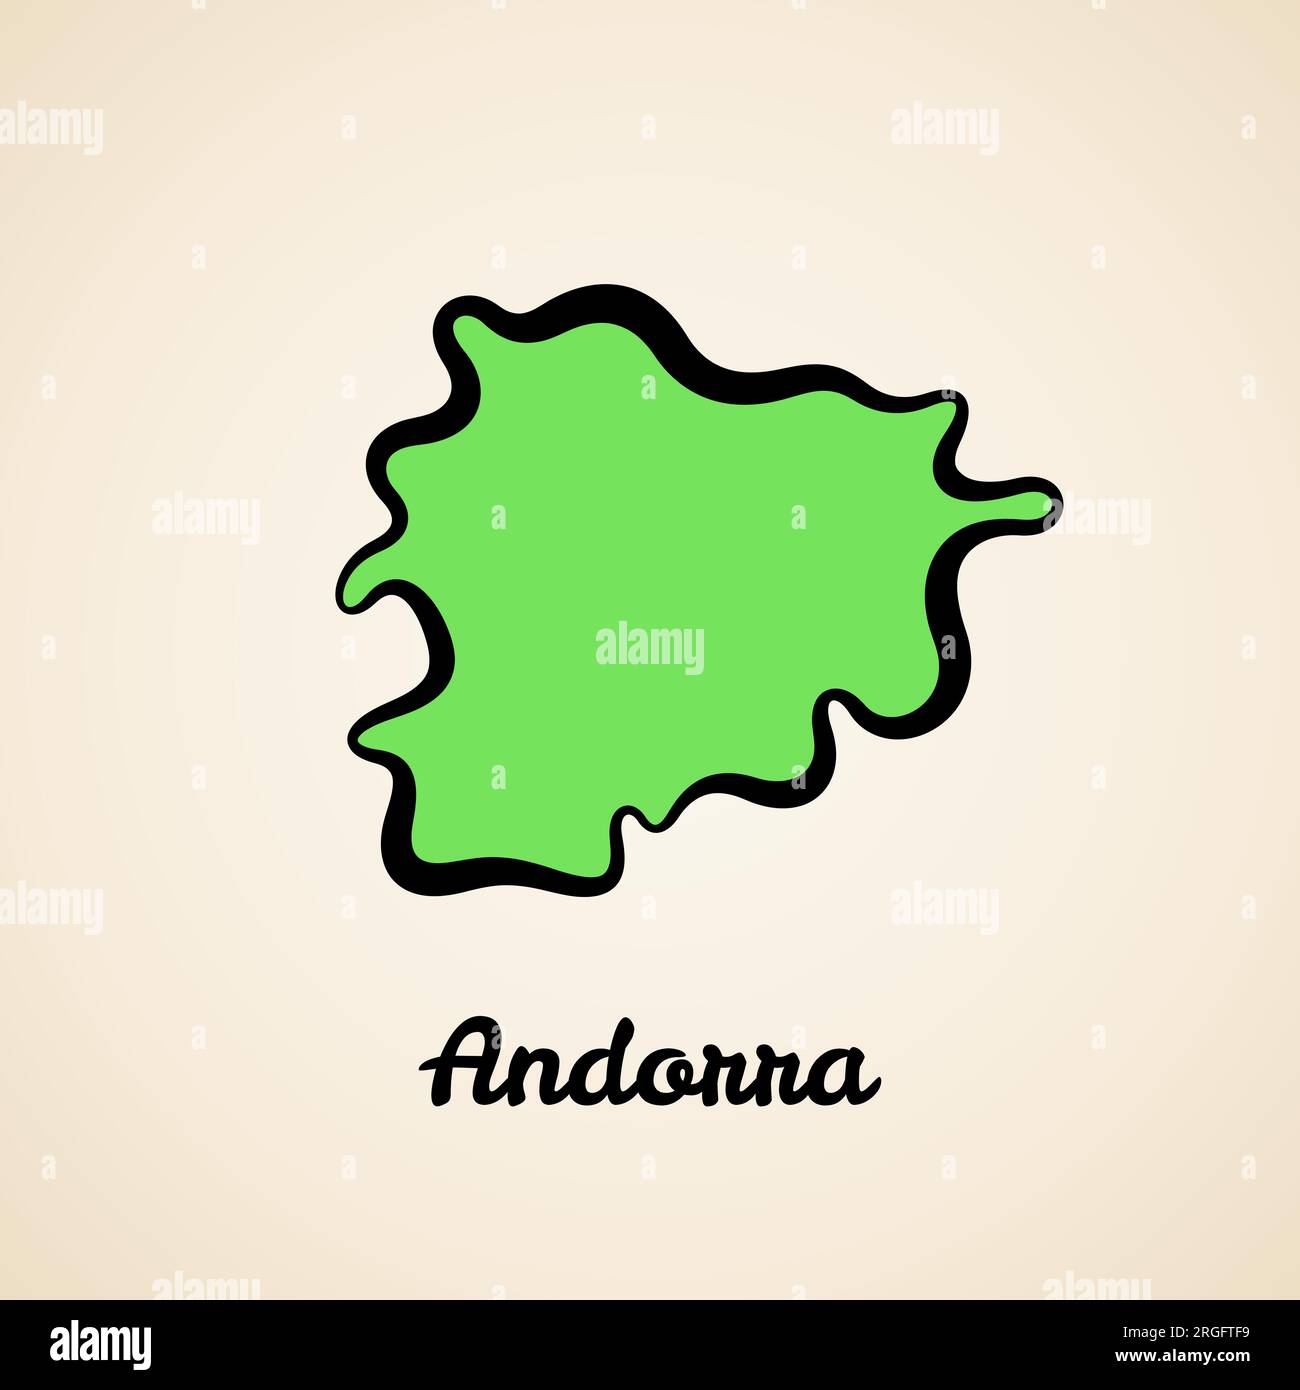 Grüne vereinfachte Karte von Andorra mit schwarzer Umrandung. Stock Vektor